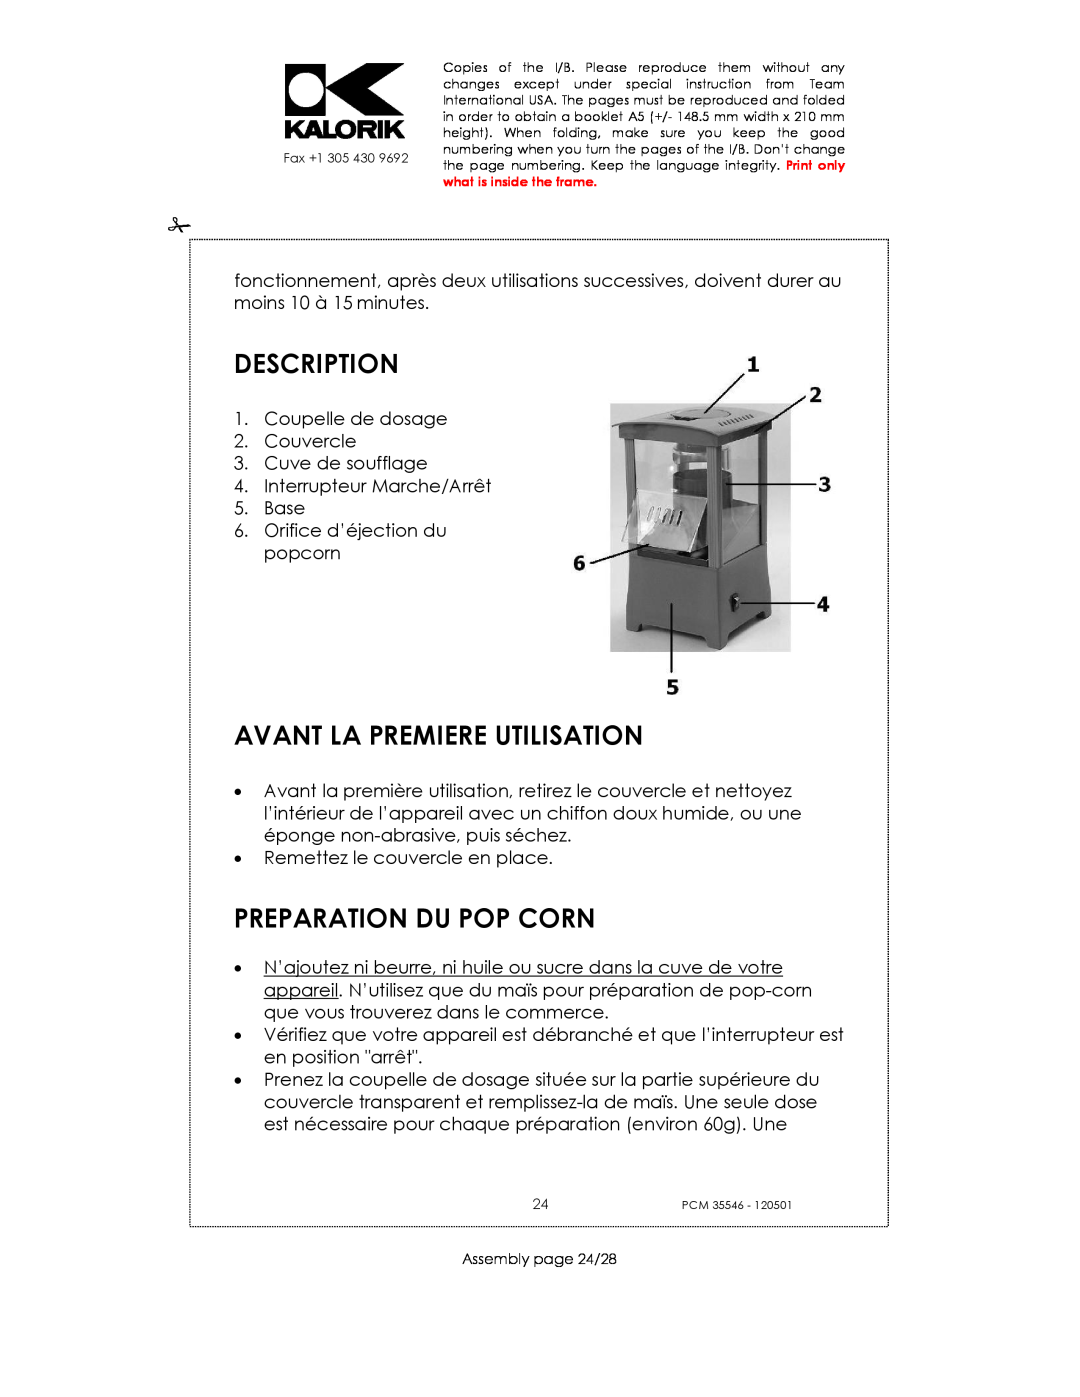 Kalorik PCM 35546 manual Description, Avant La Premiere Utilisation, Preparation Du Pop Corn 